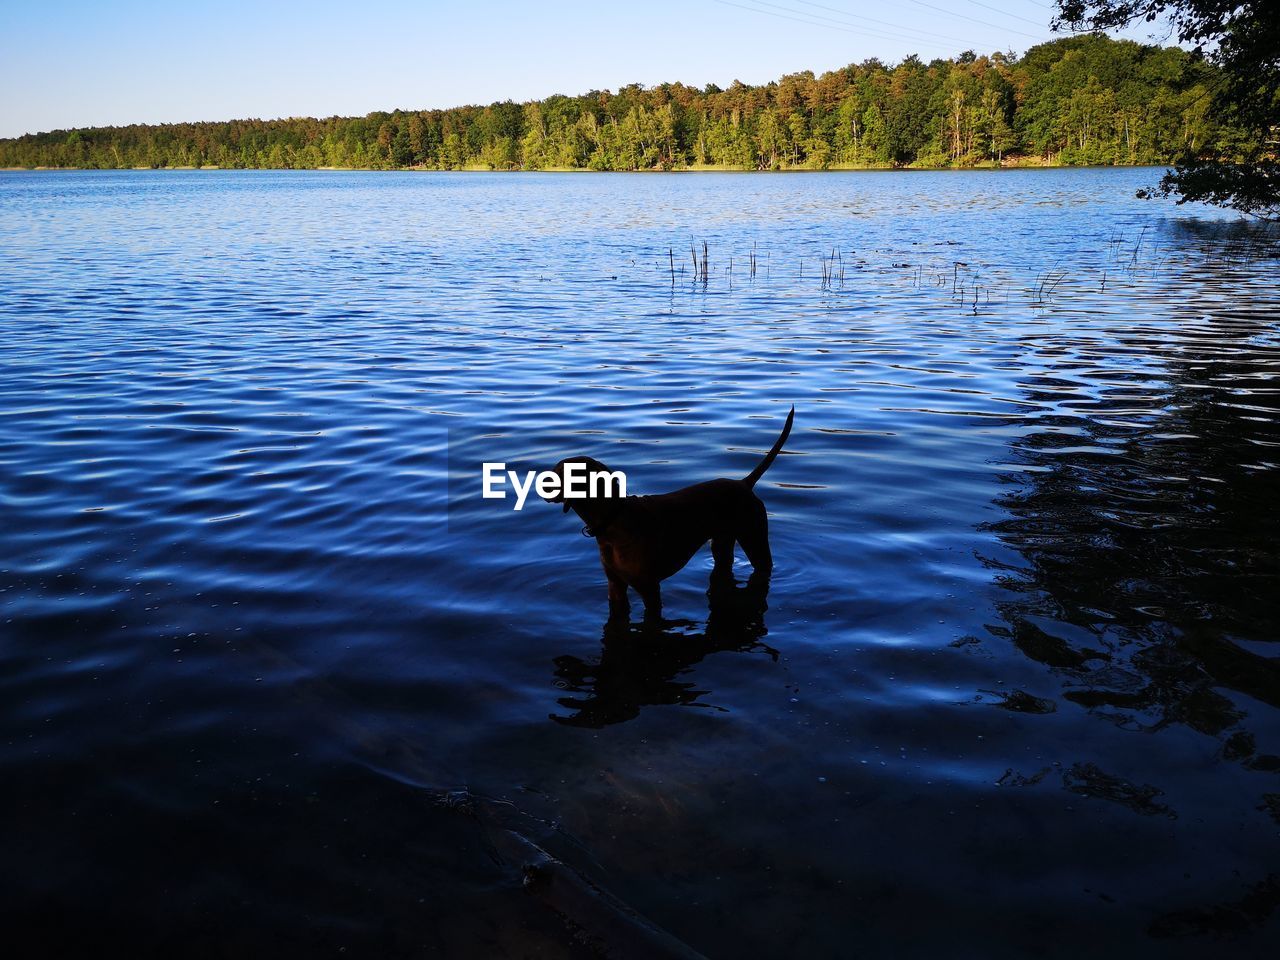 DOG ON LAKE